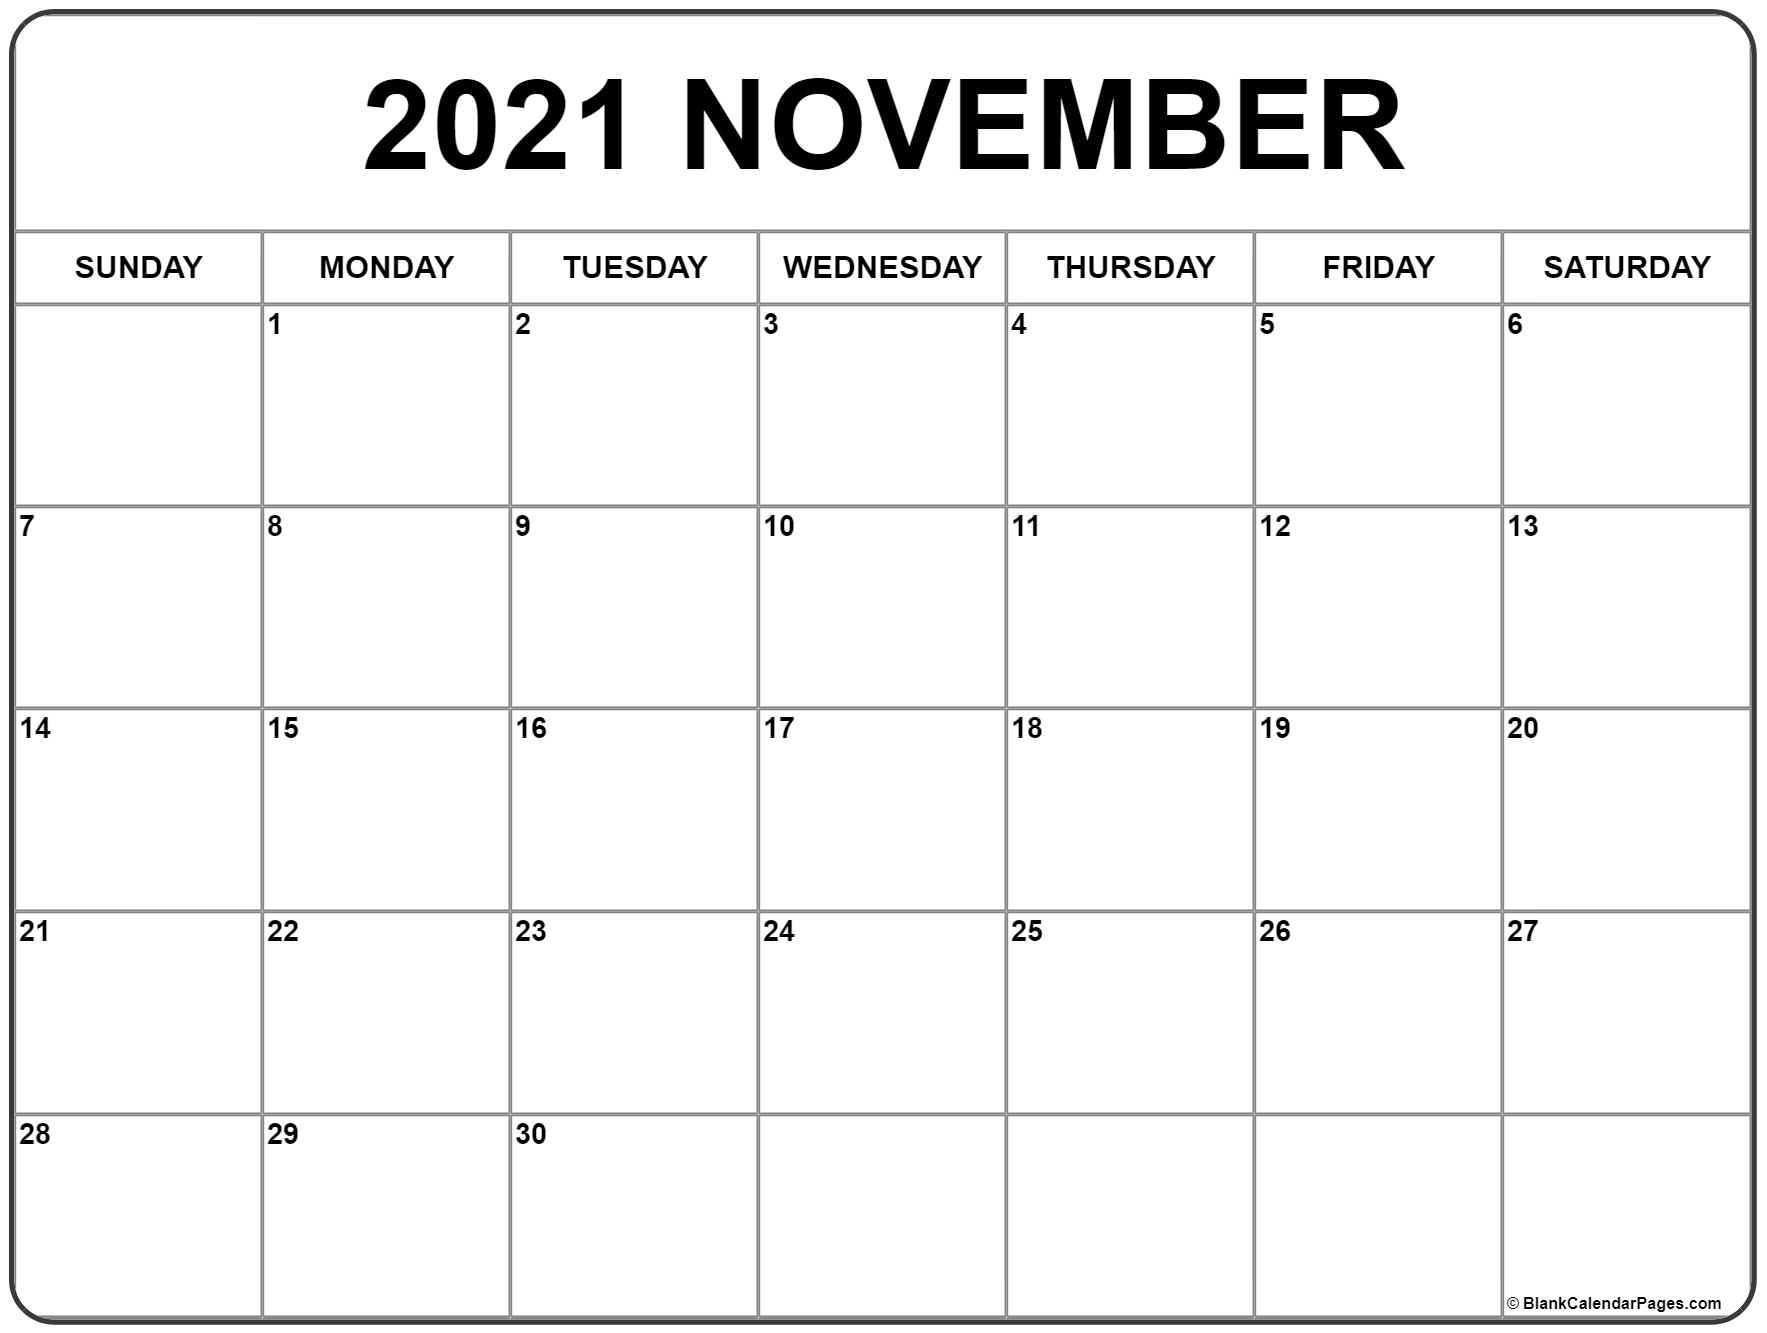 Collect 2021 November Calendar Printable Free